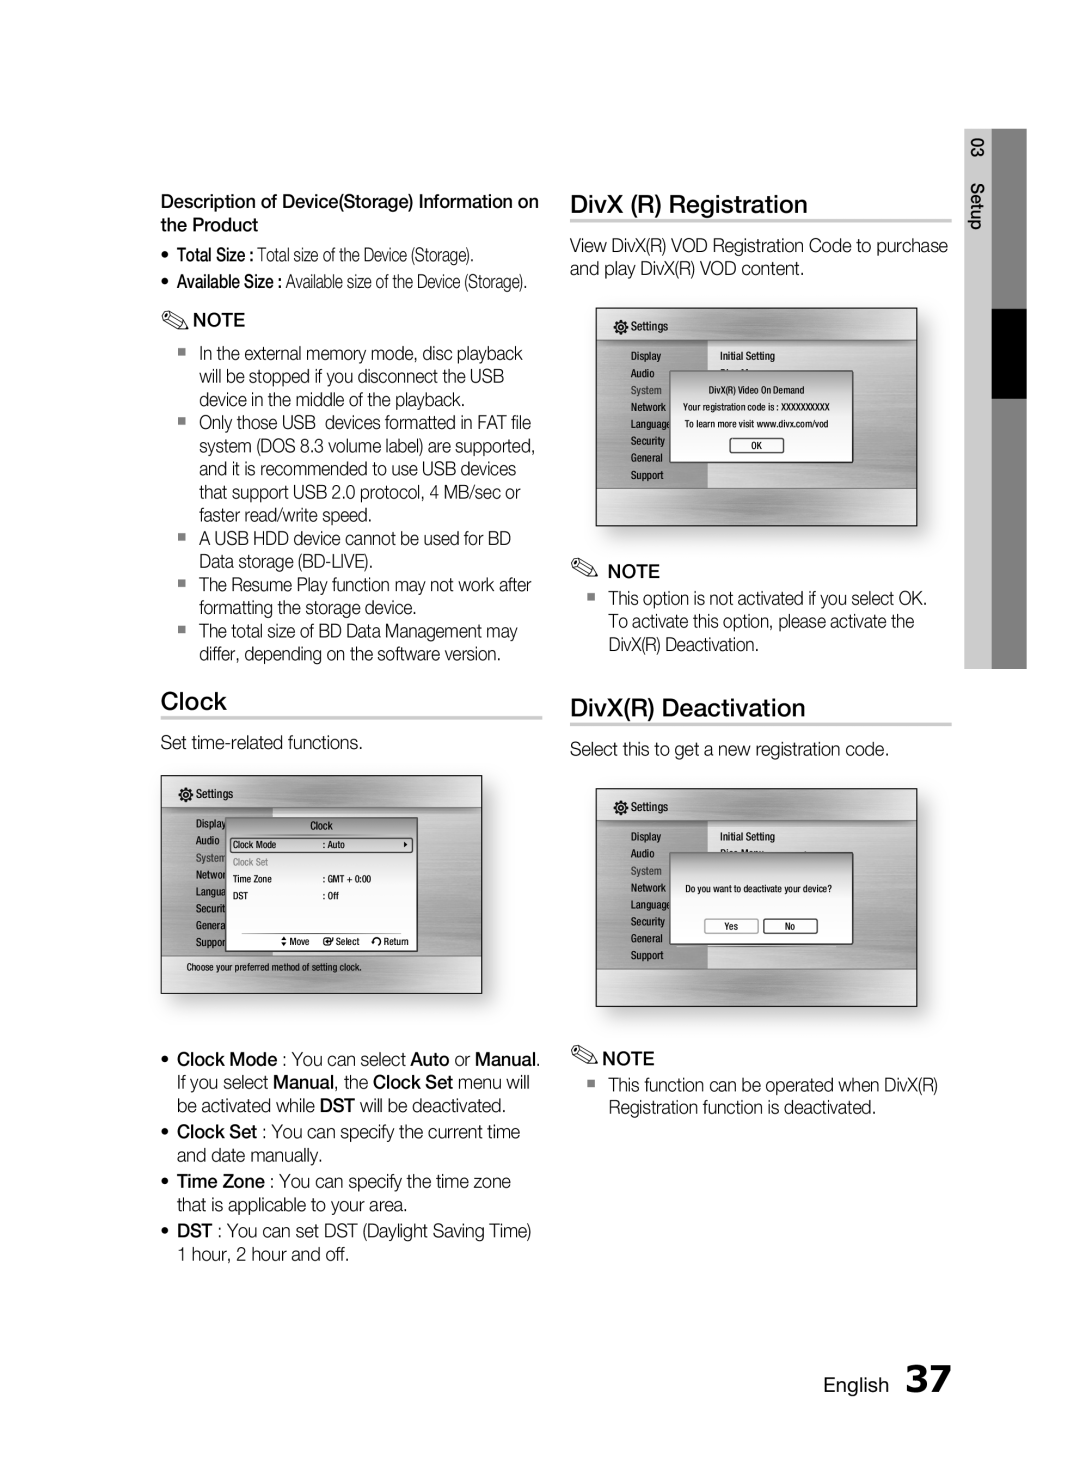 Samsung HT-C6530, AH68-02255S user manual DivX R Registration, Clock, DivXR Deactivation, English 